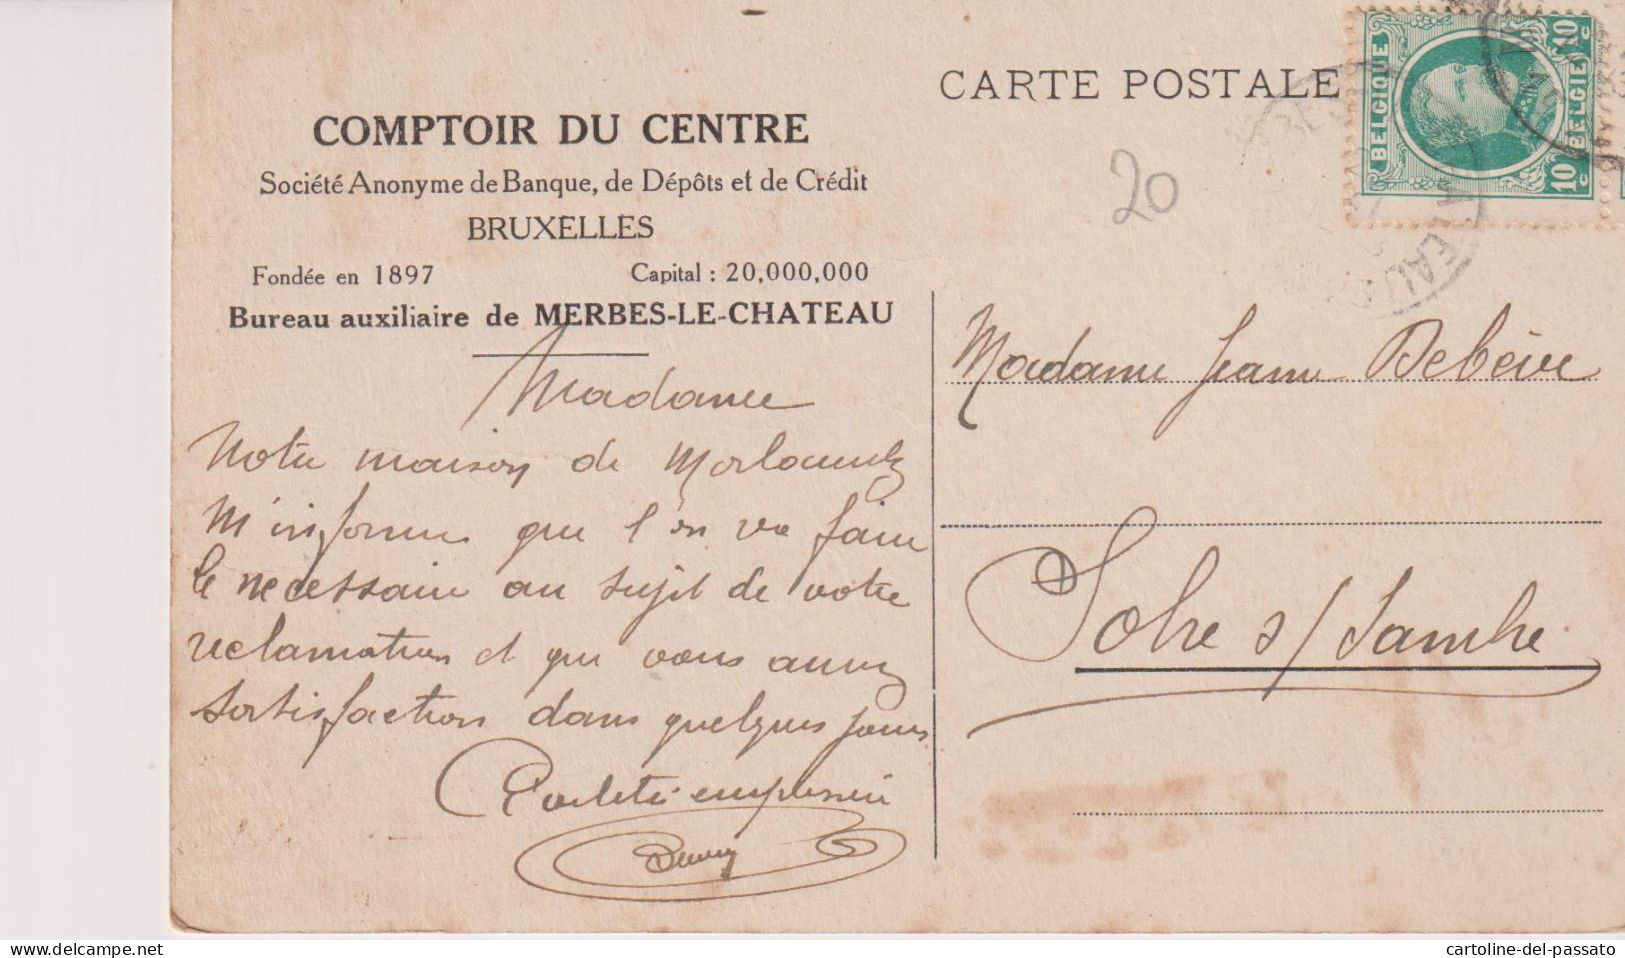 MERBES-LE-CHATEAU : COMPTOIR DU CENTRE BUREAU AUXILIAIRE (S.A.DE BANQUE DE DEPOTS ET DE CREDIT BXL) - Merbes-le-Chateau